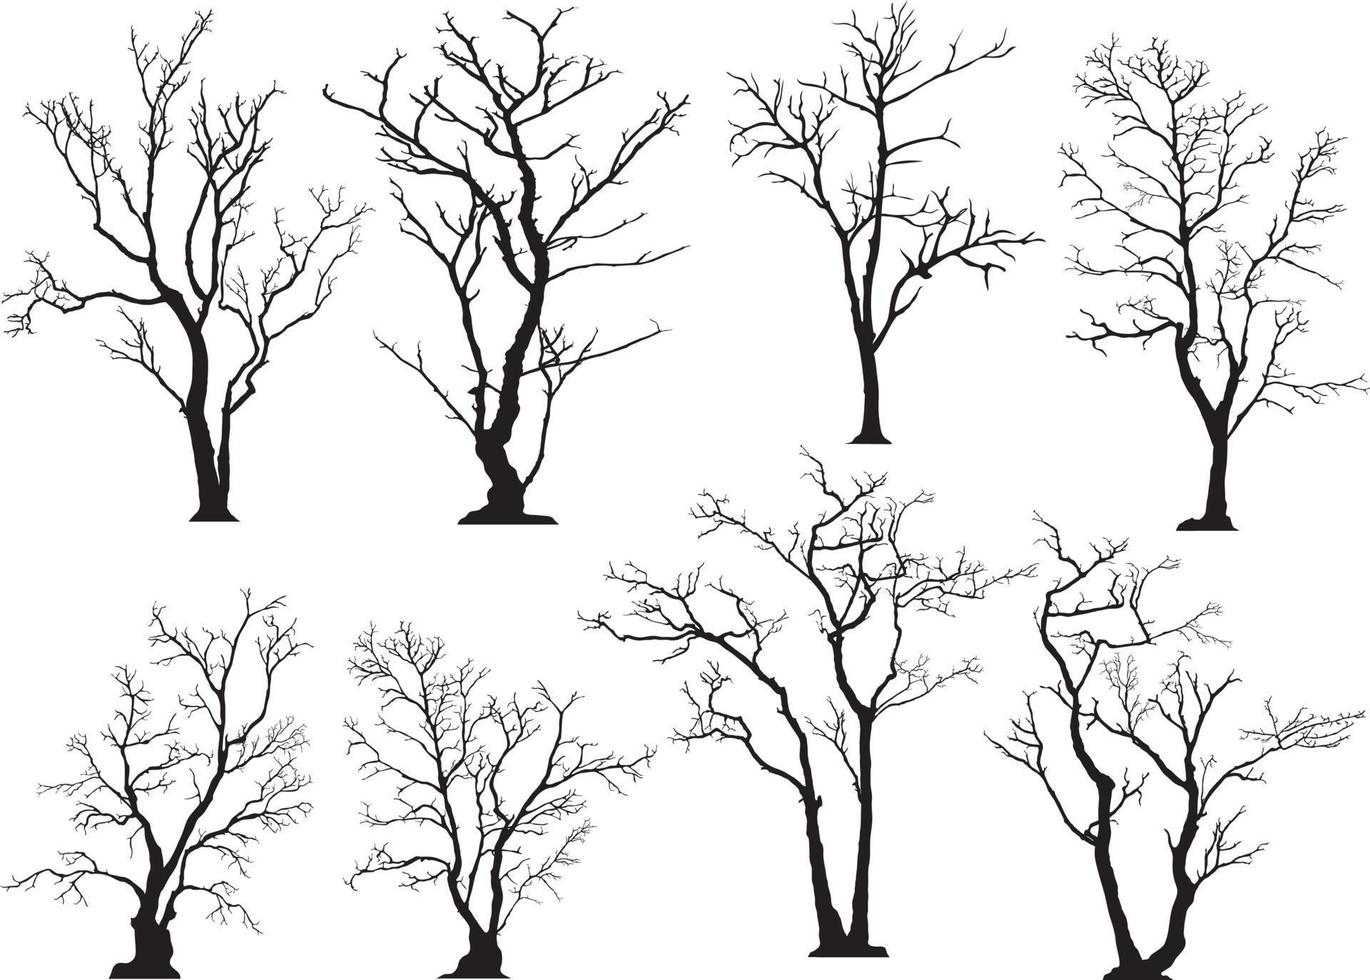 silhouette d'arbre sans feuilles vecteur